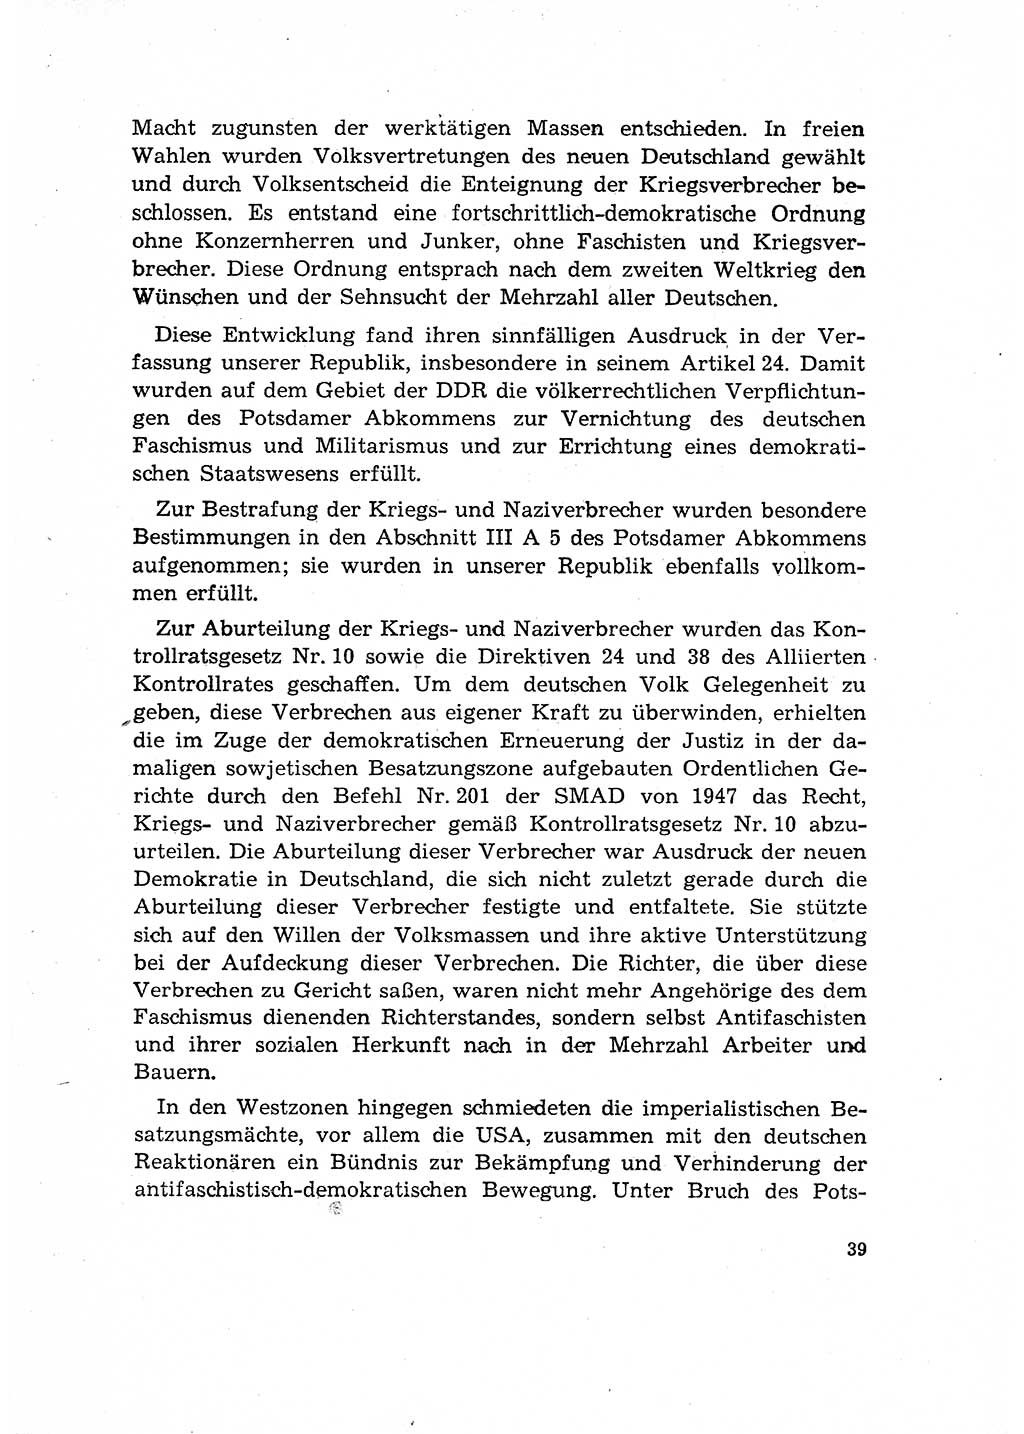 Bestrafung der Nazi- und Kriegsverbrecher [Deutsche Demokratische Republik (DDR)] 1964, Seite 39 (Bestr. Nazi-Kr.-Verbr. DDR 1964, S. 39)